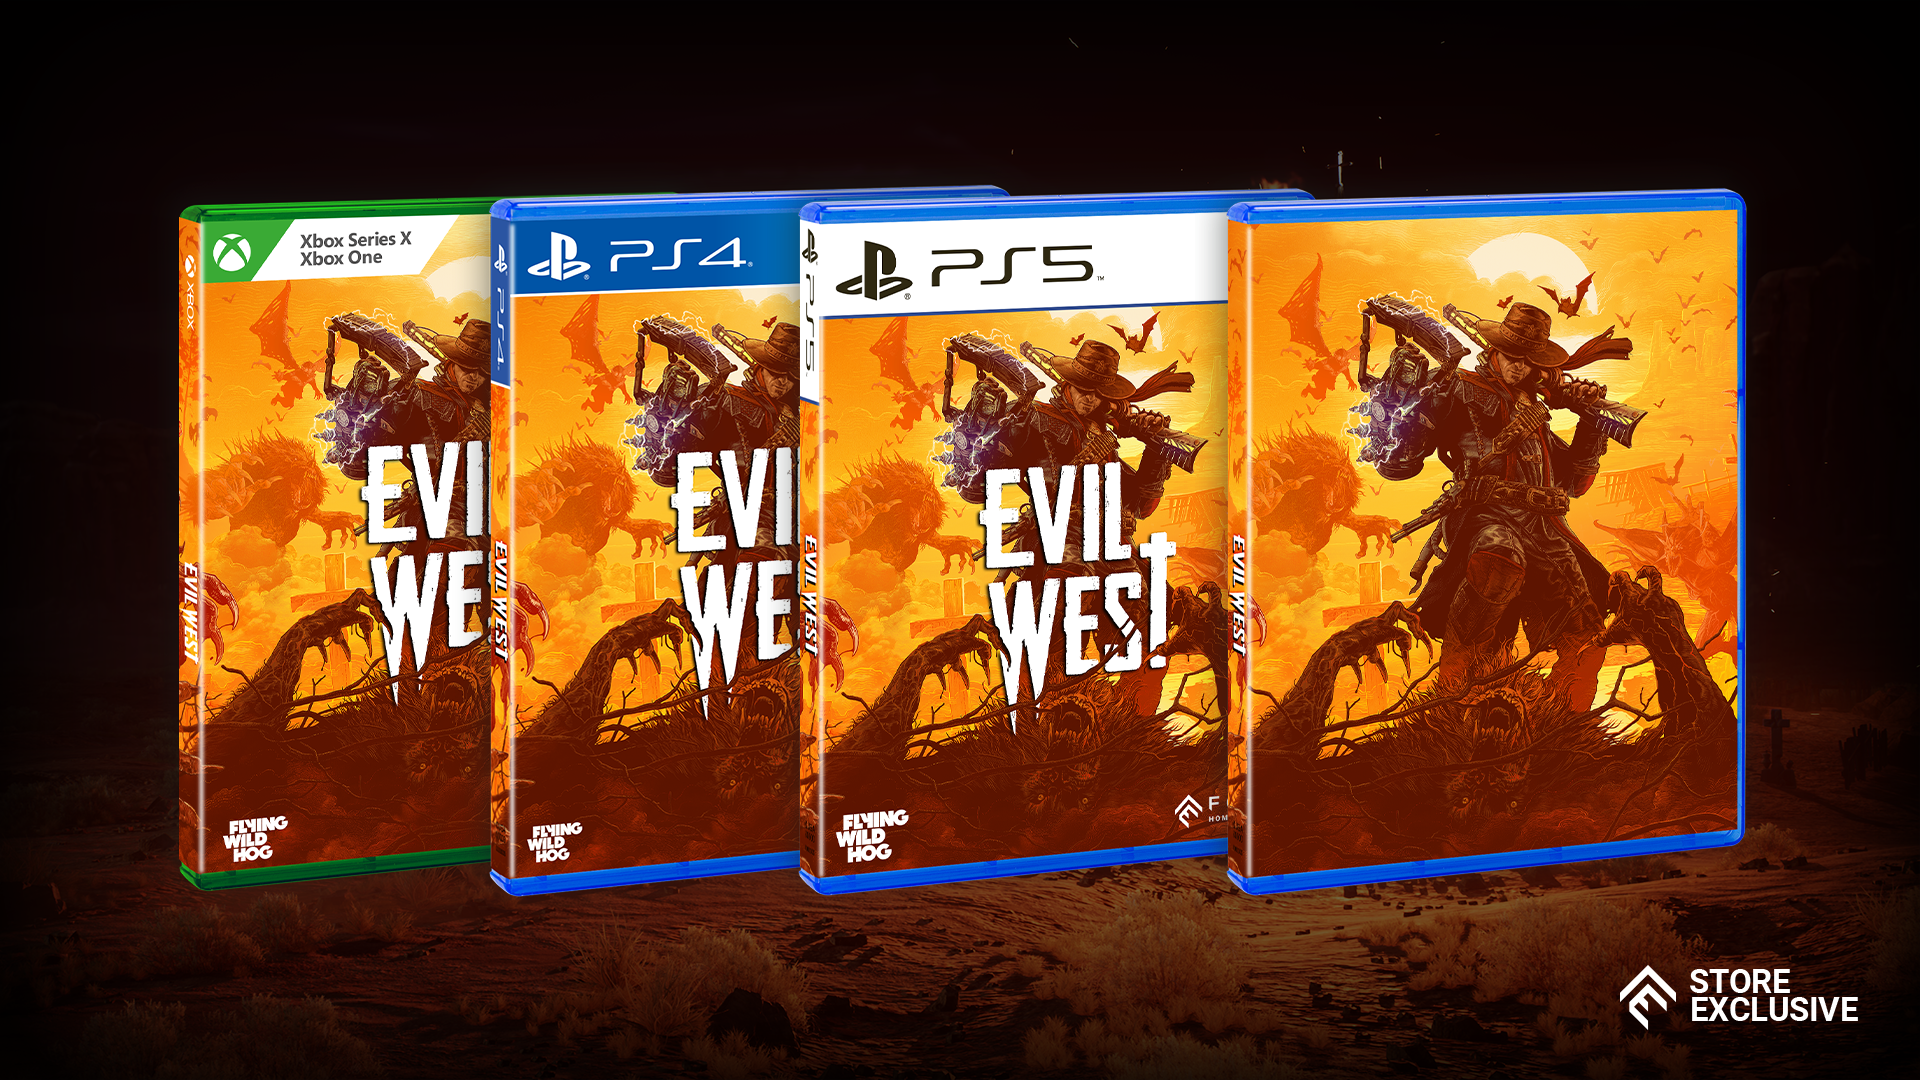 Evil West, Focus Entertainment, Playstation 5 